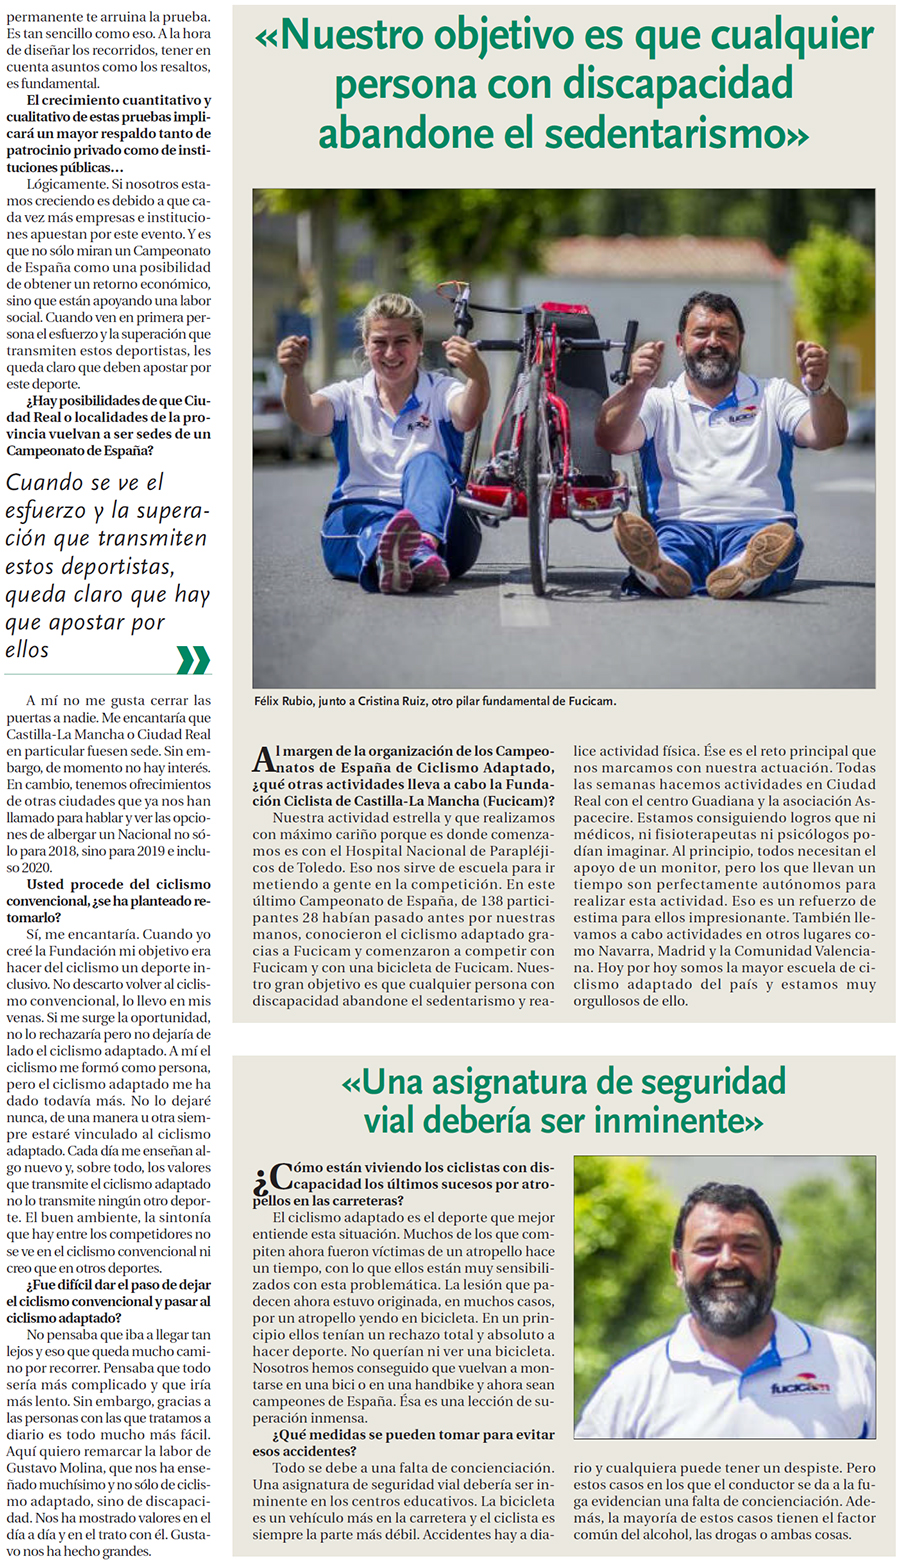 FÉLIX RUBIO Presidente de la Fundación Ciclista de Castilla-La Mancha